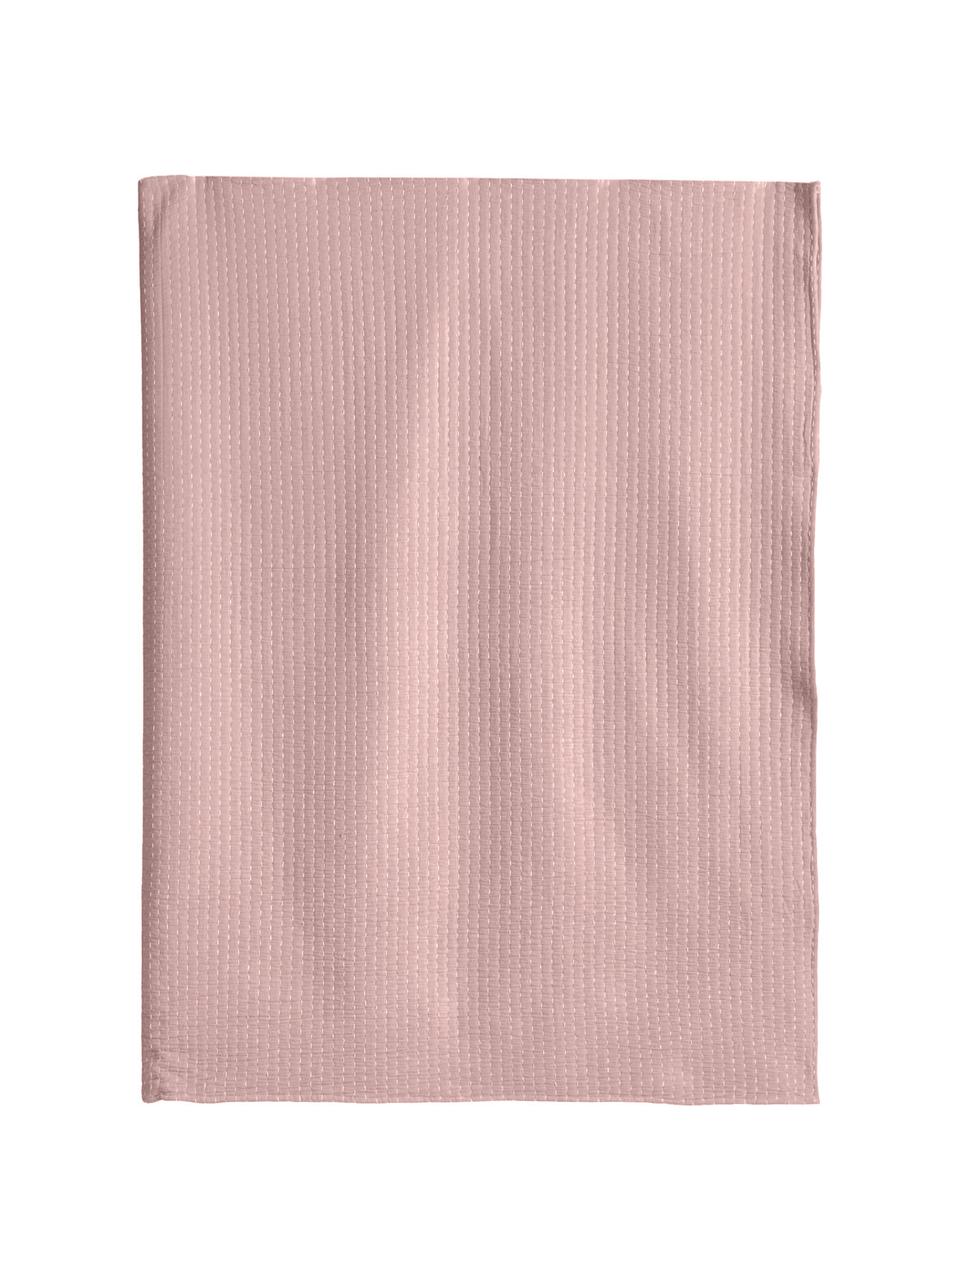 Bedsprei Agata in roze met siersteek, 100% katoen, Roze, 180 x 260 cm